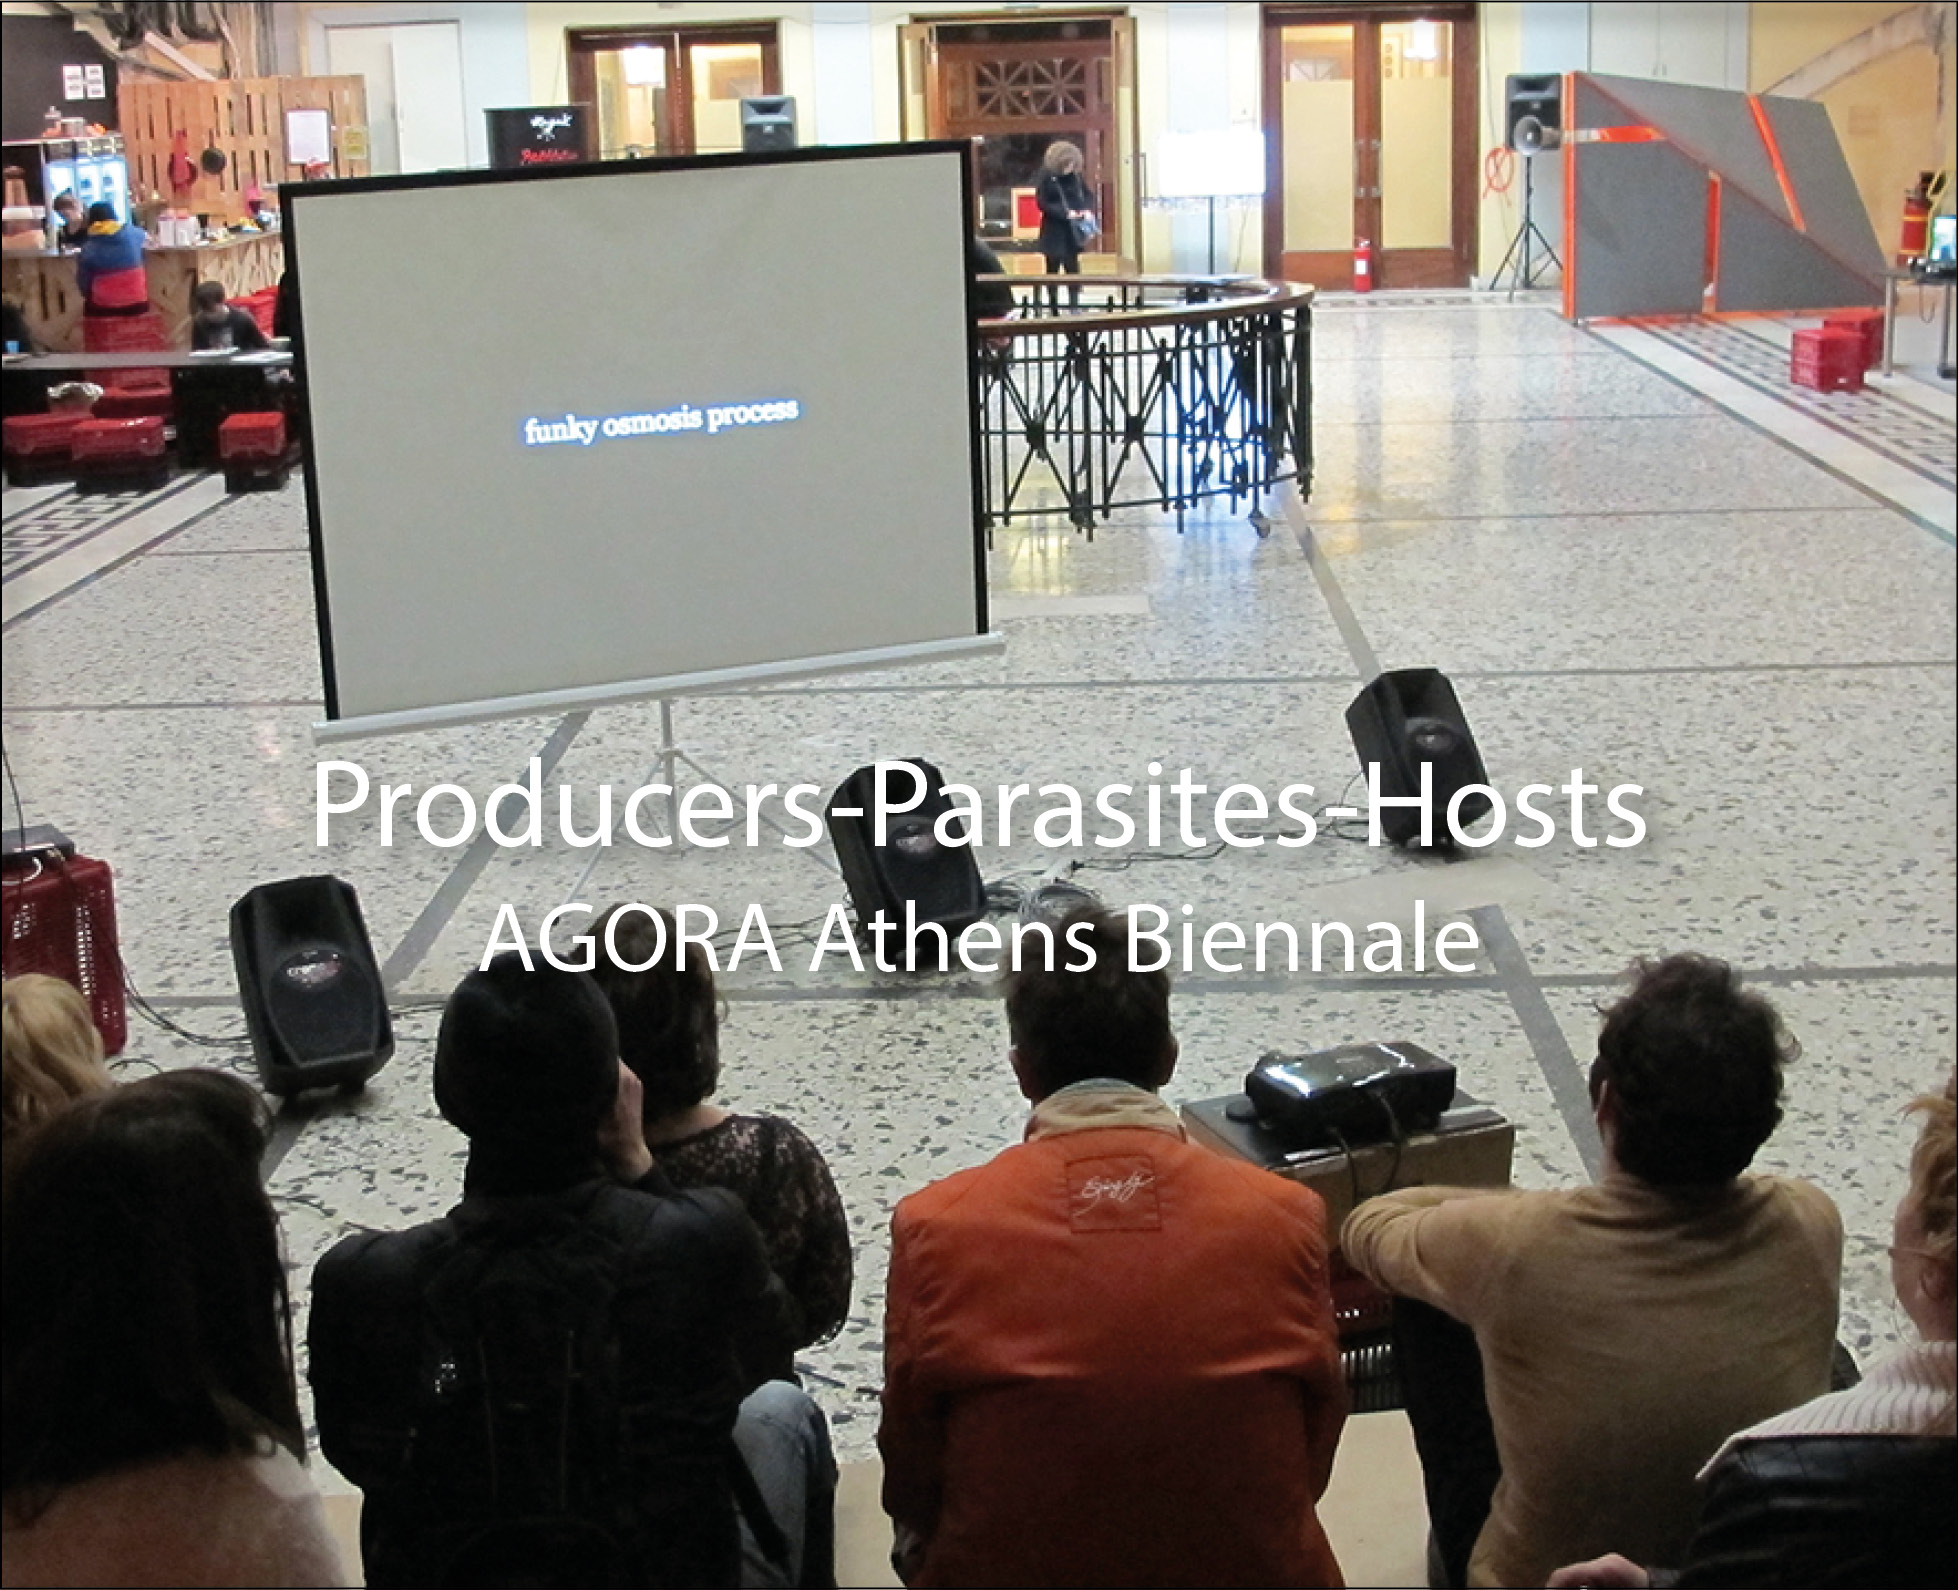 PRODUCERS-PARASITES-HOSTS (ATHENS MIX)